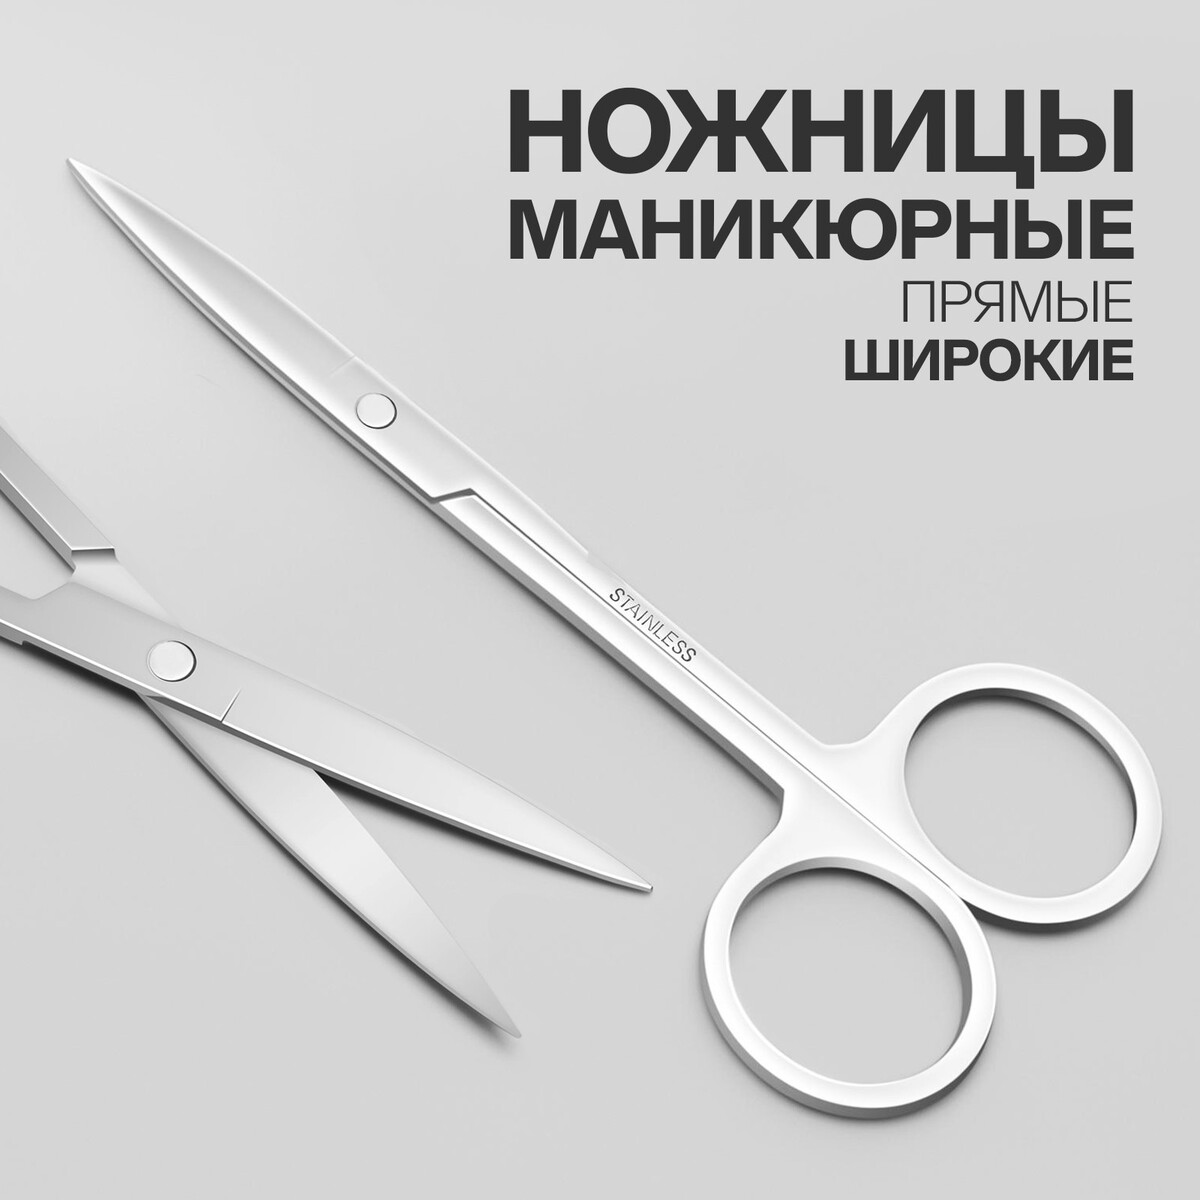 Ножницы маникюрные, прямые, широкие, 12 см, цвет серебристый ножницы маникюрные широкие прямые 10 см матовый